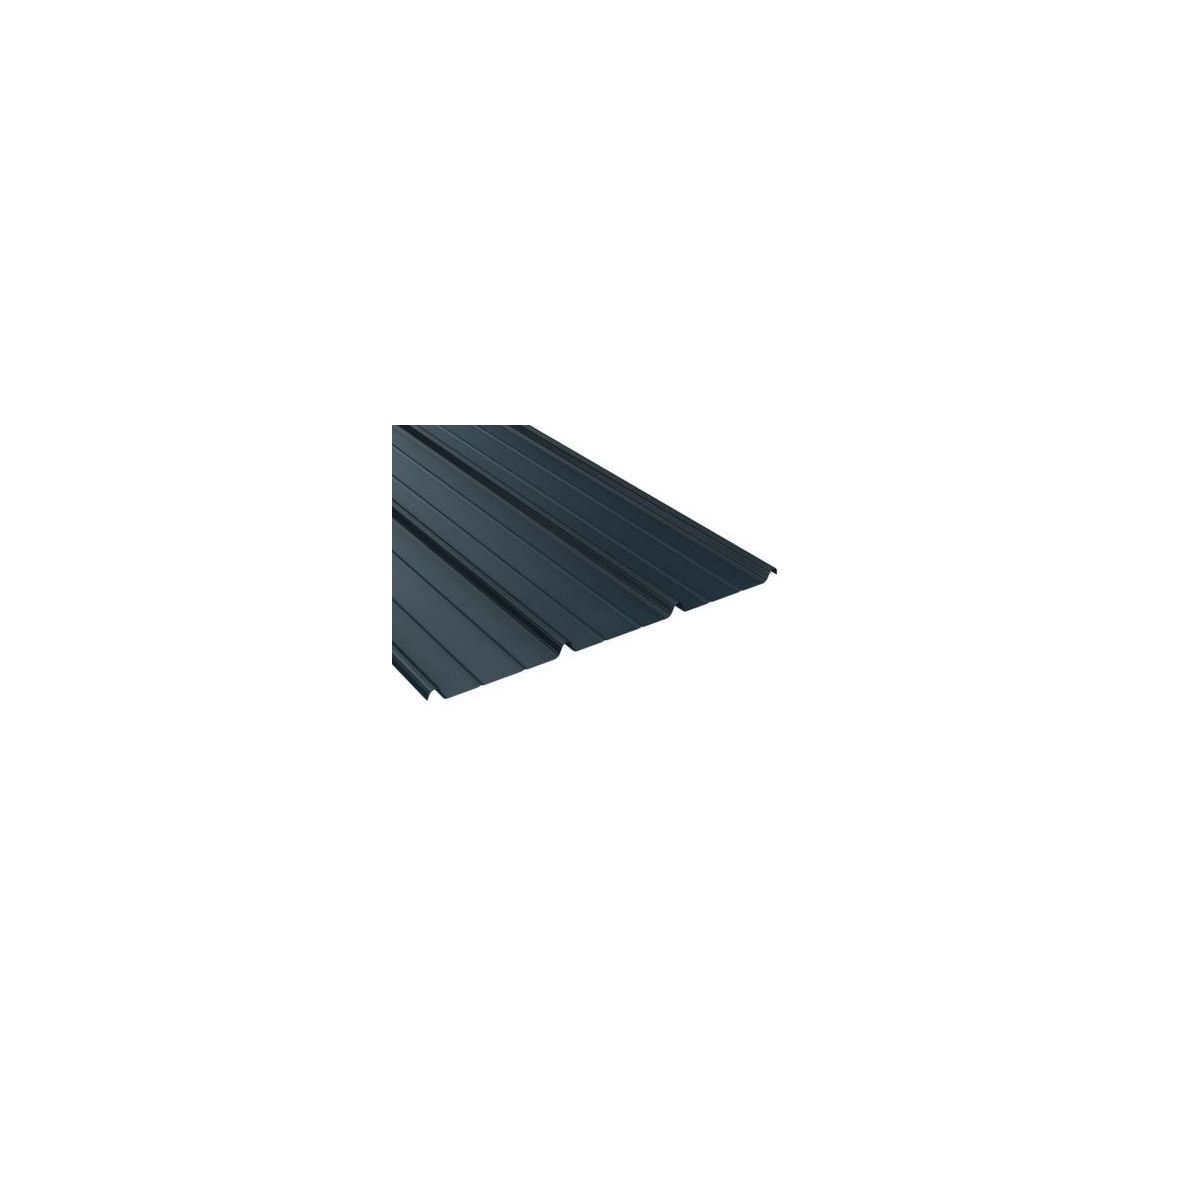 Tôle de toiture acier galvanisé - Anti condensation - Ral 7016 (gris anthracite) - Longueur 5m